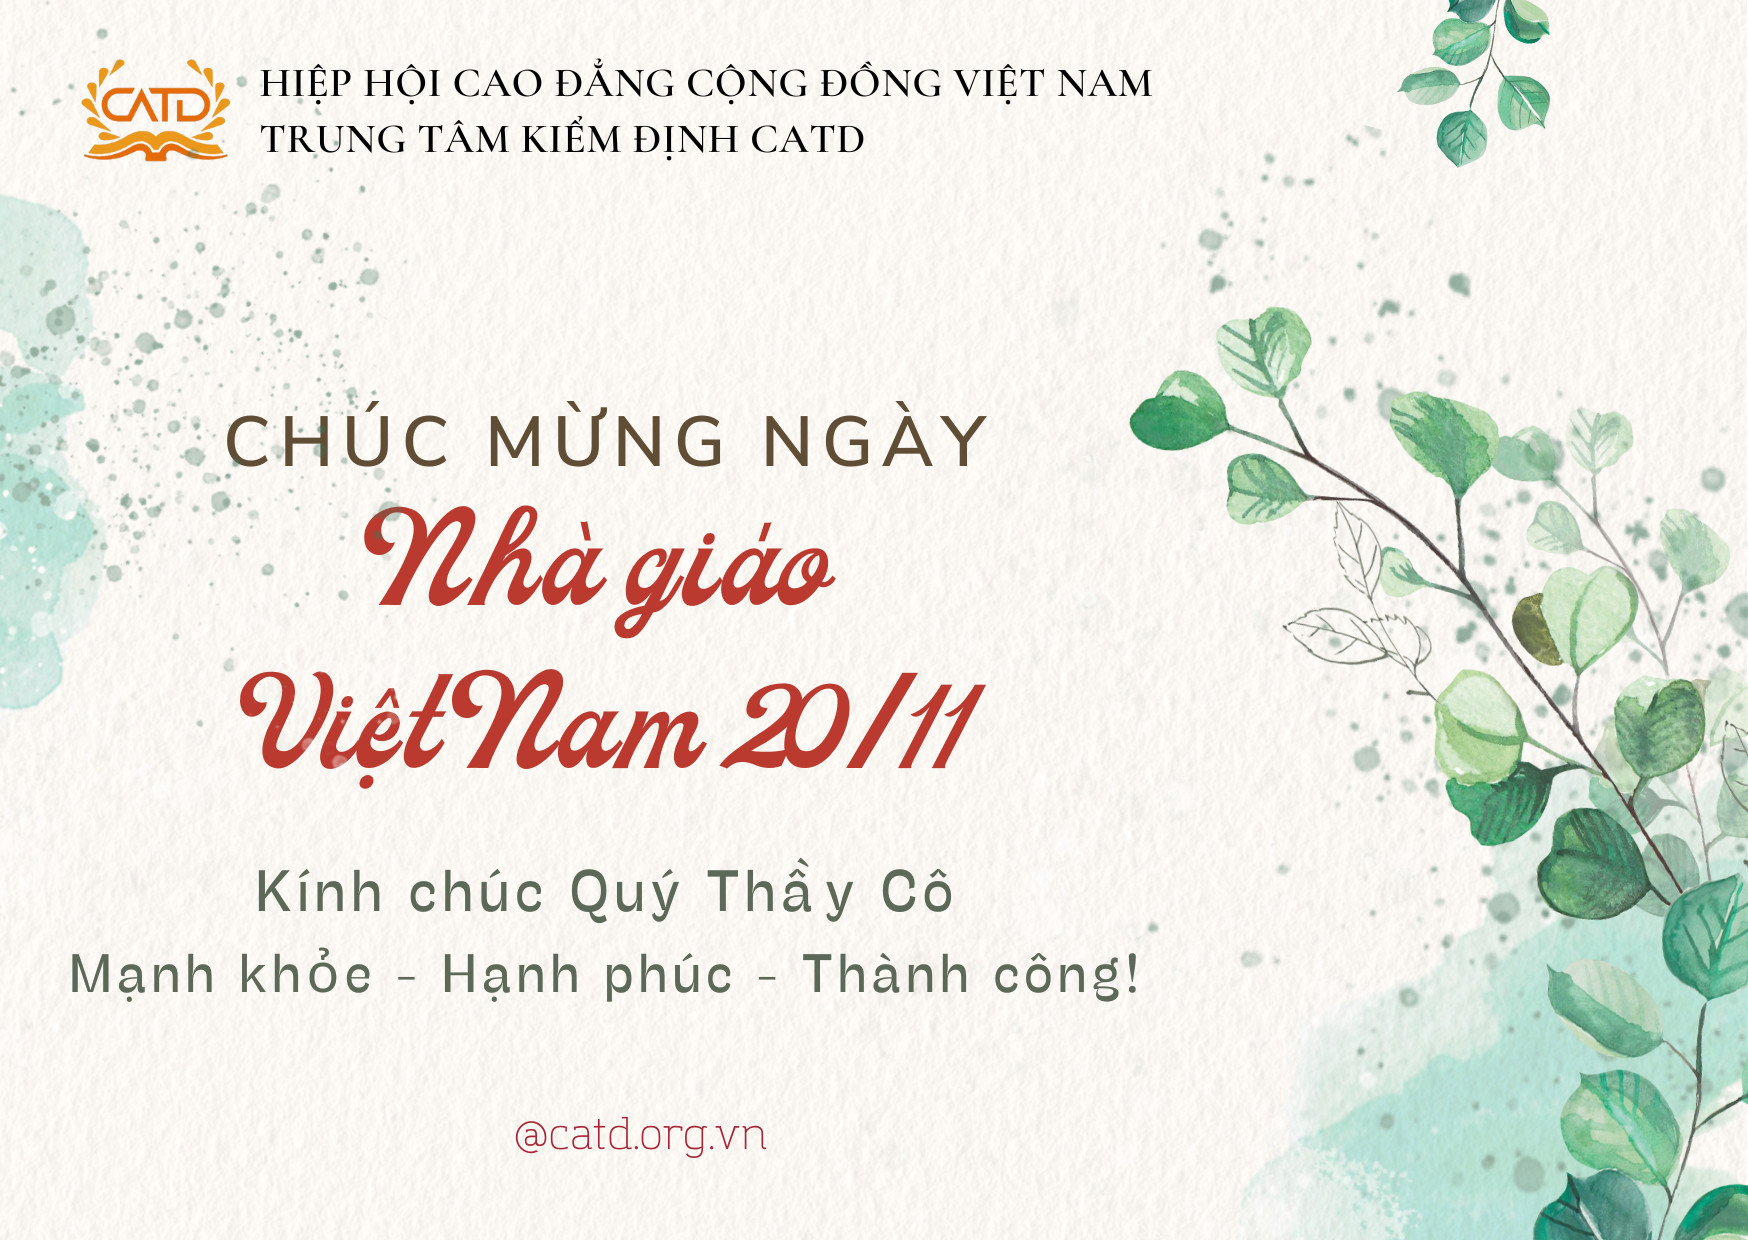 Chúc mừng ngày Nhà giáo Việt Nam 20/11 - CATD